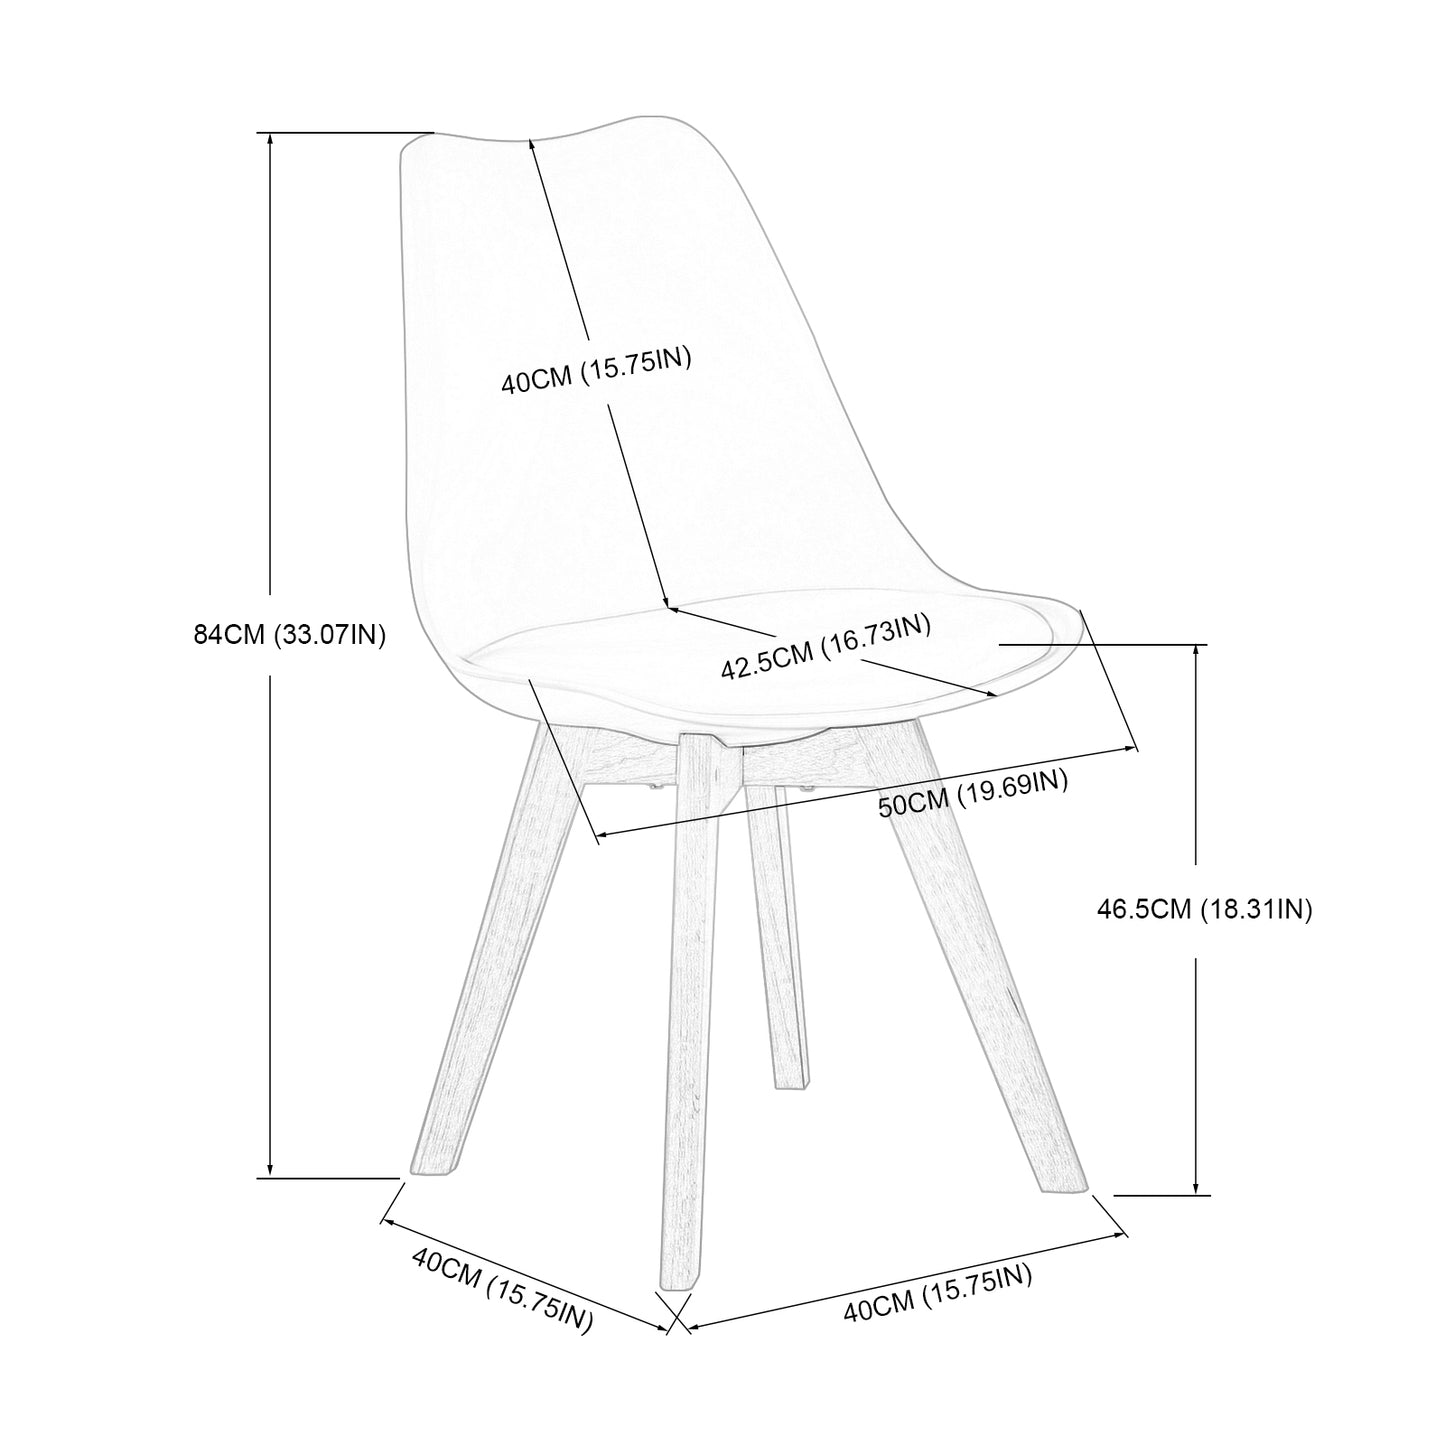 Table à manger ronde transparente  Scandinave Φ80*75cm et 2 chaises noir 46x 43 x 83 cm